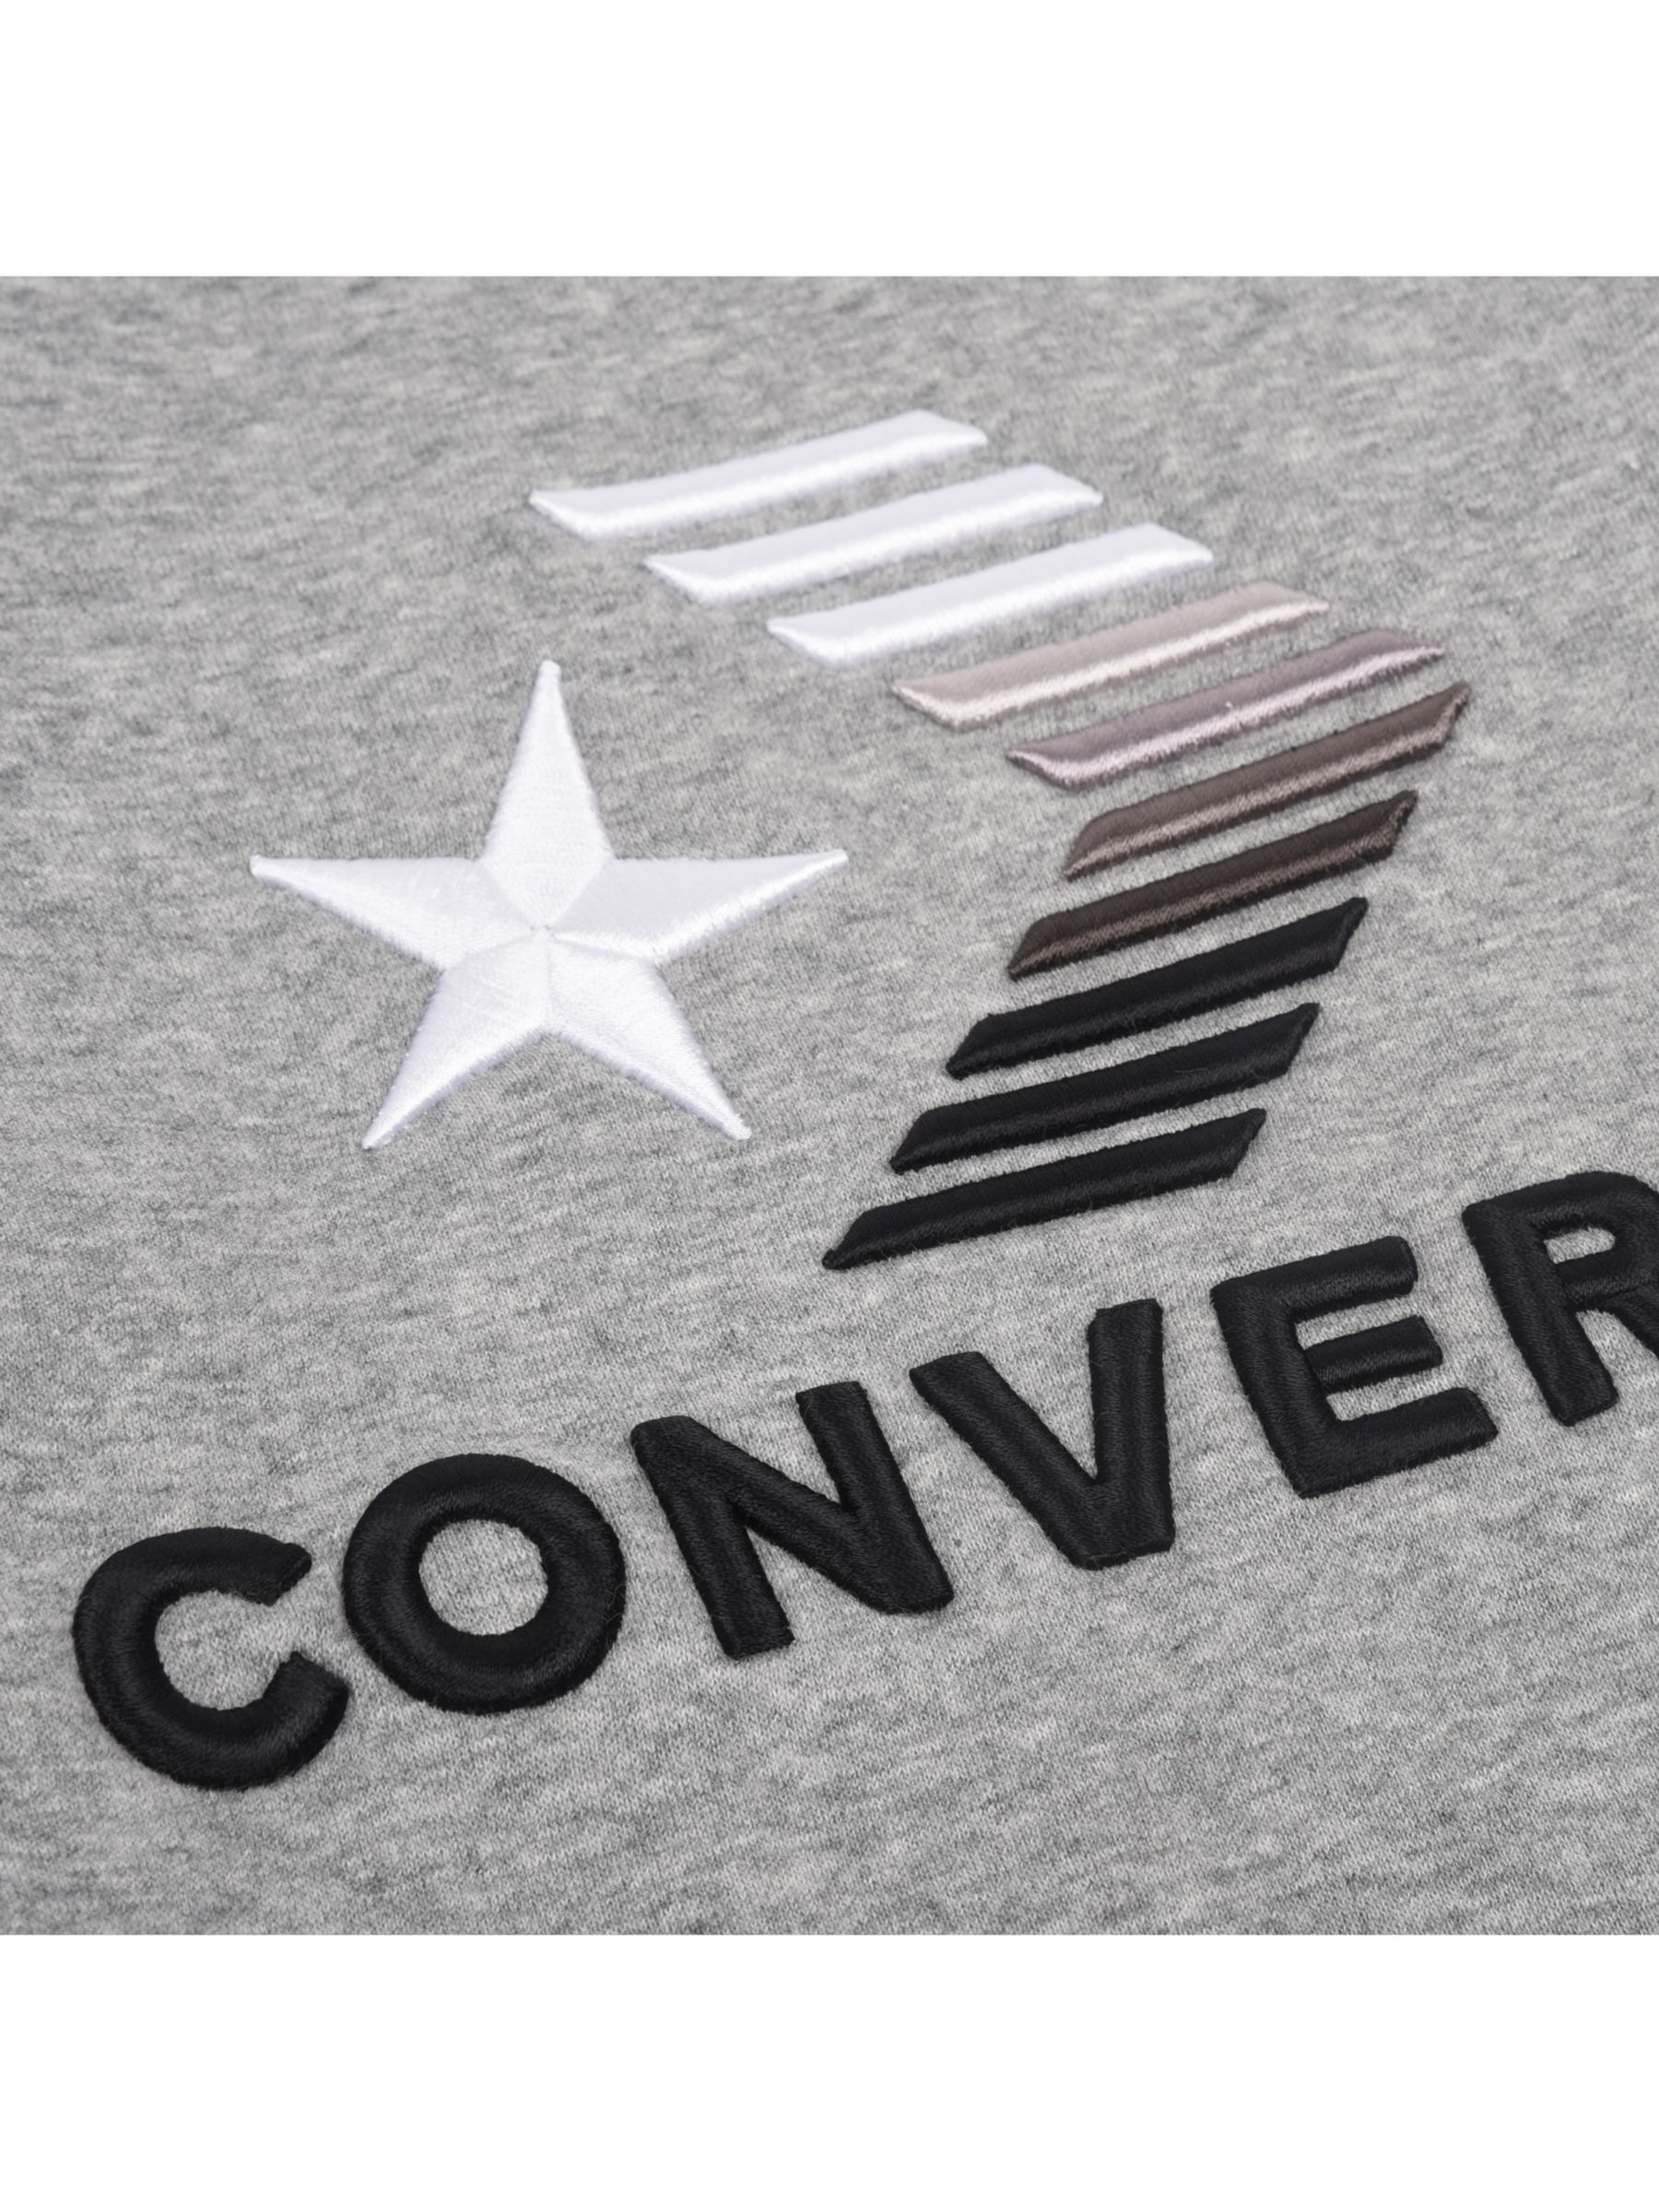 men's grey converse jumper